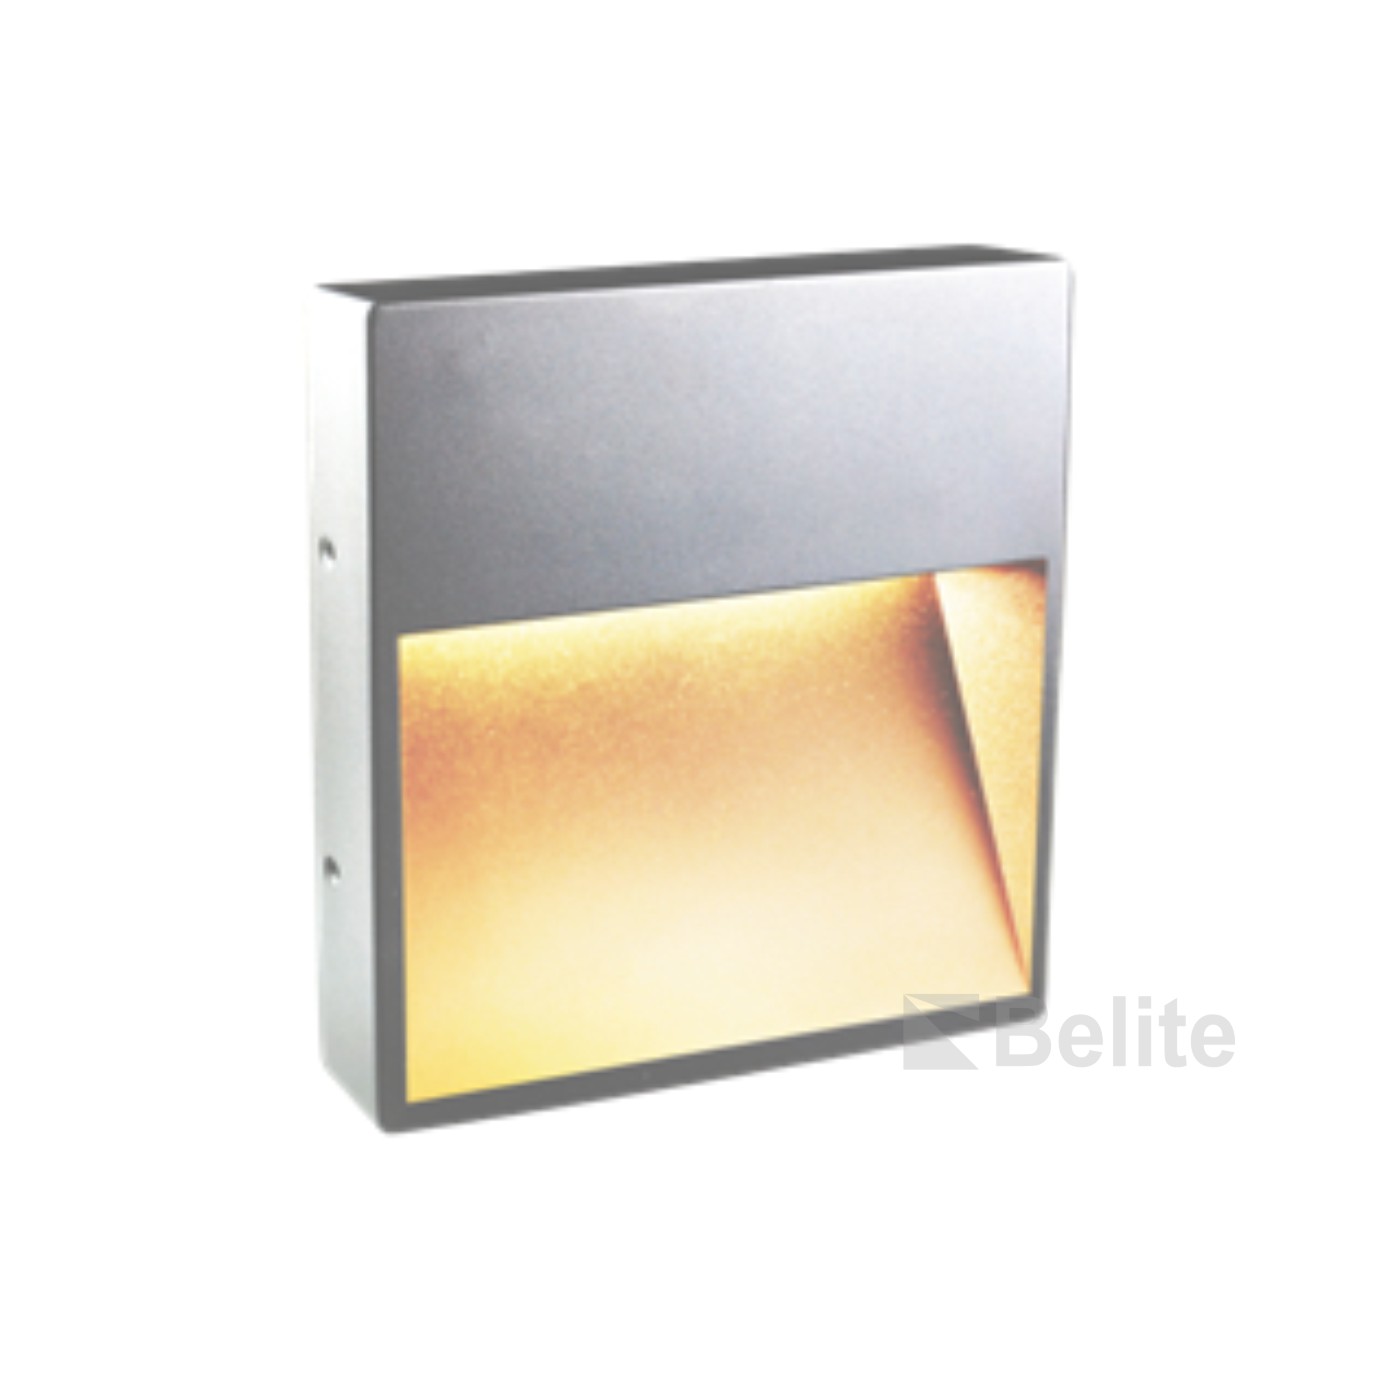 BELITE 6W IP65 LED STAIR WALL LIGHT AC230V